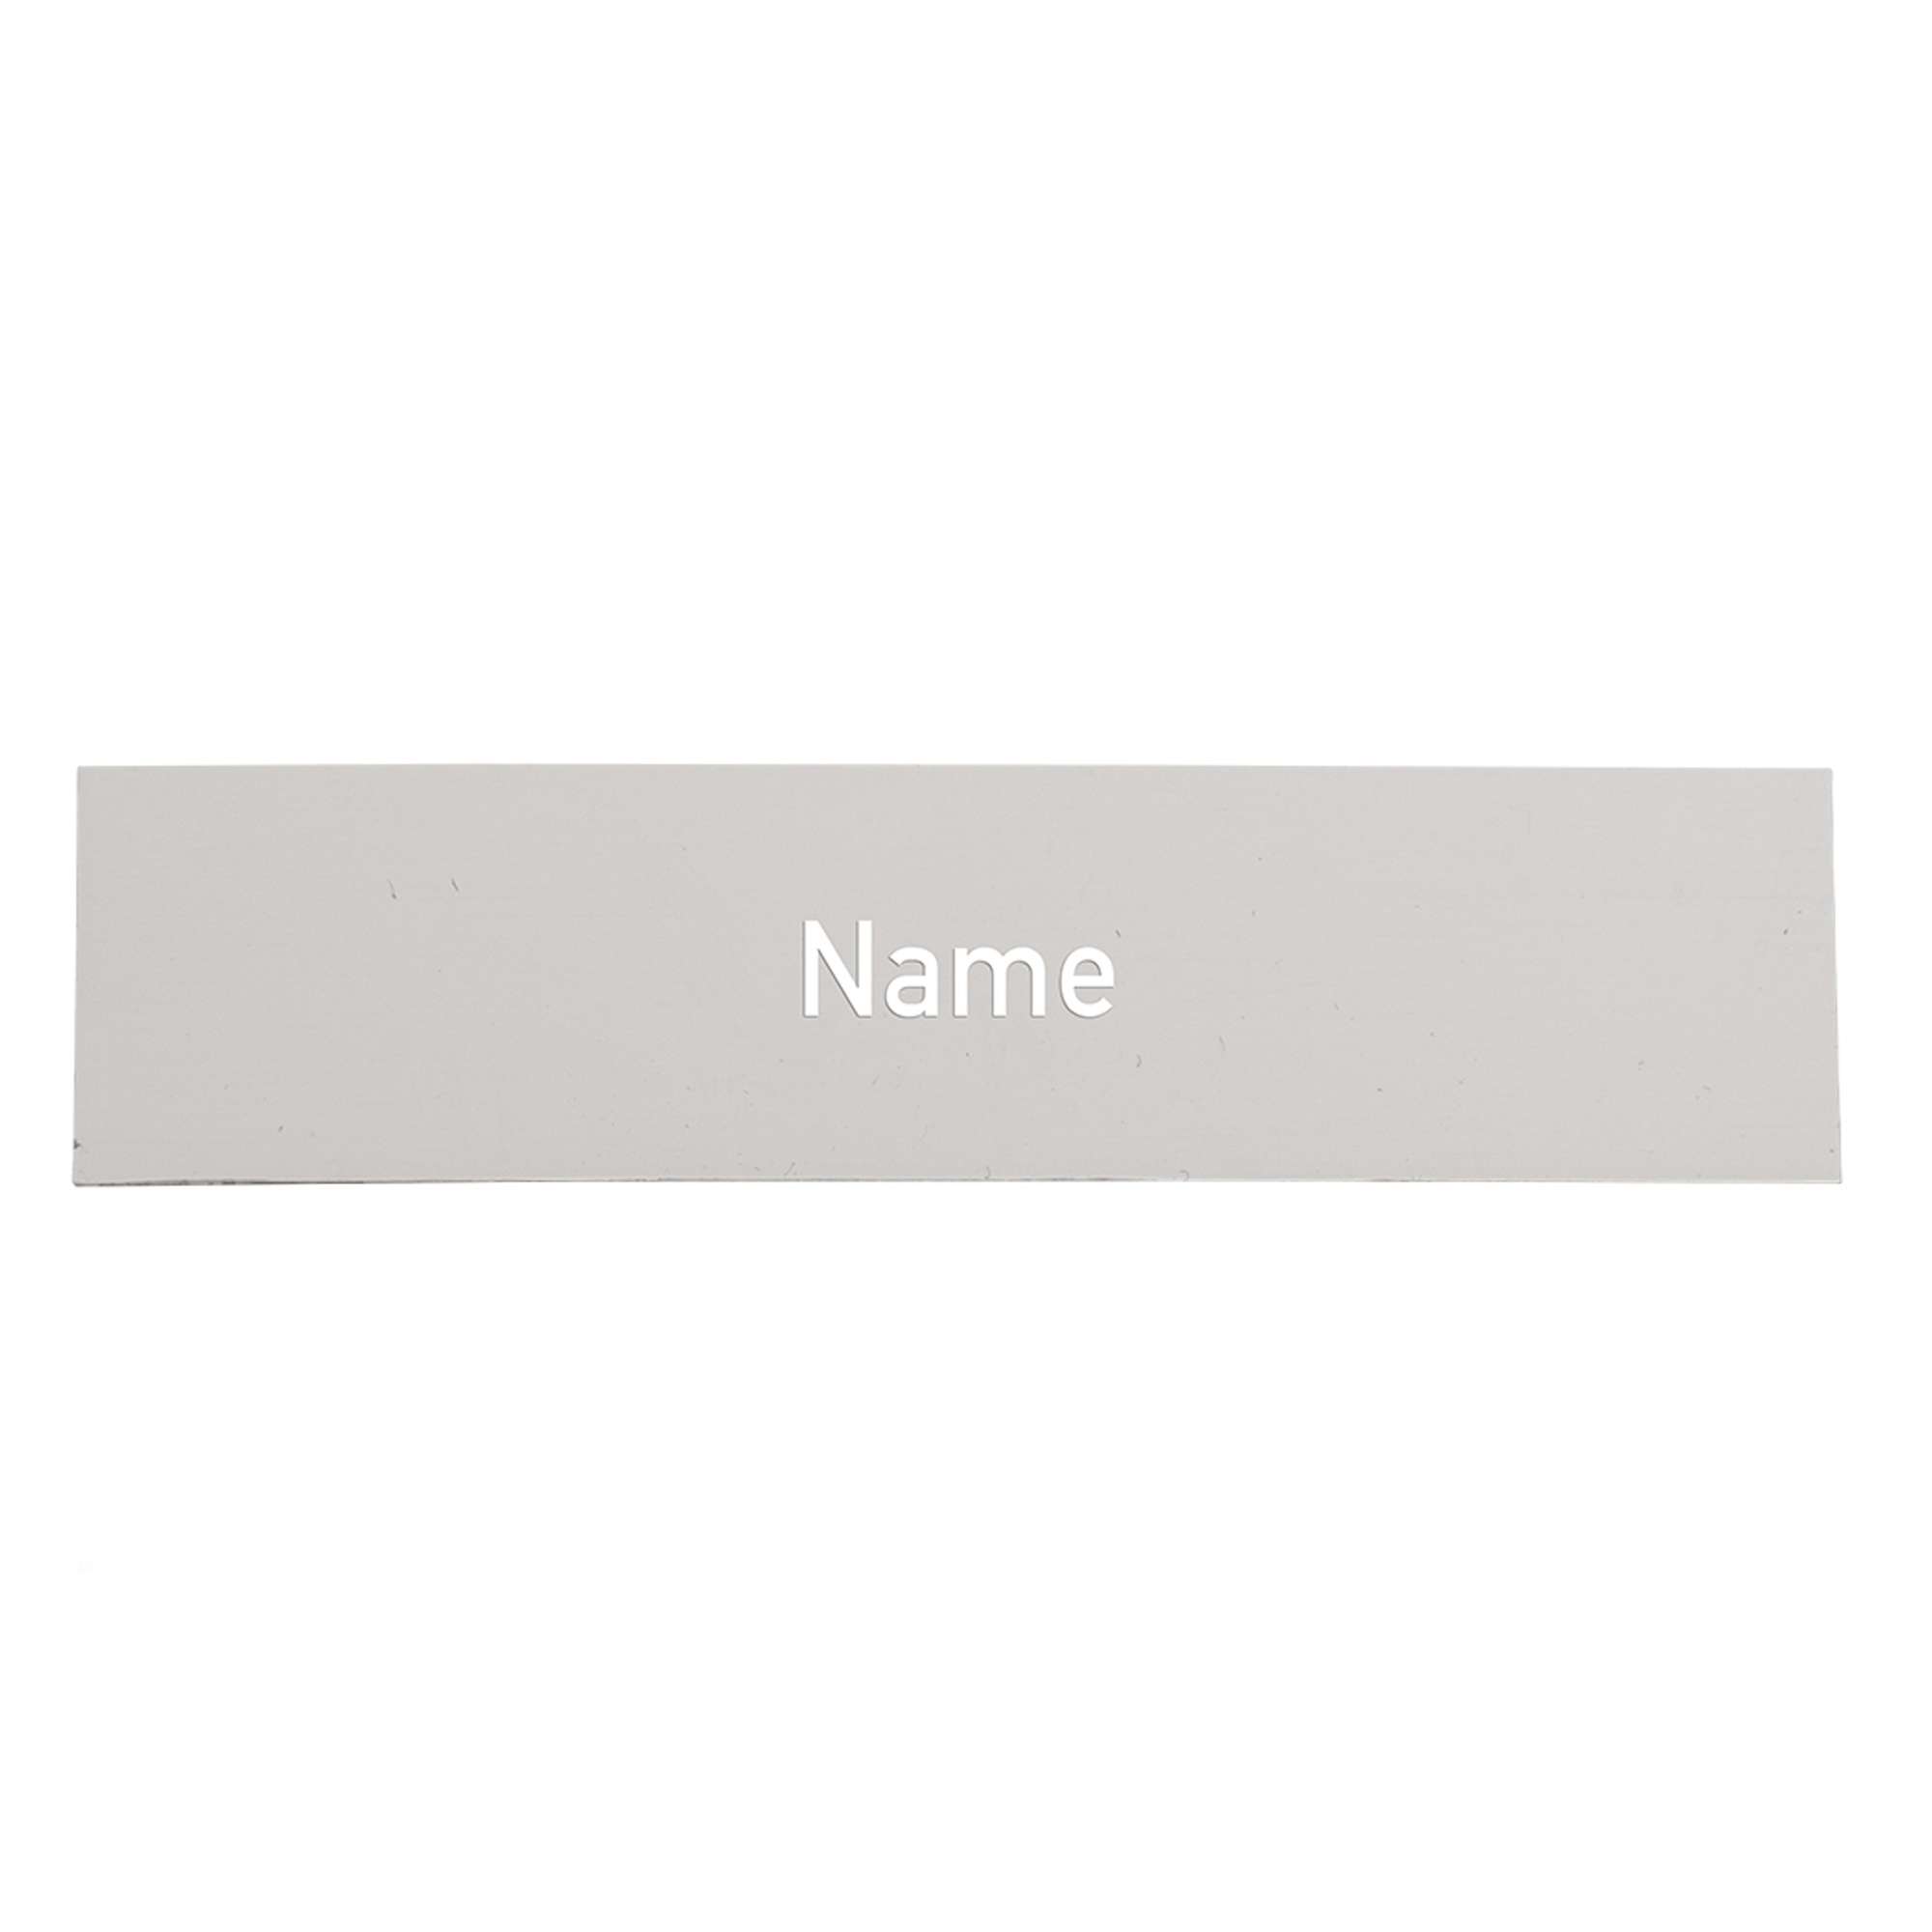 Namensschild-Einlage für Module mit Gravur, weiße Schrift / grauer Hintergrund